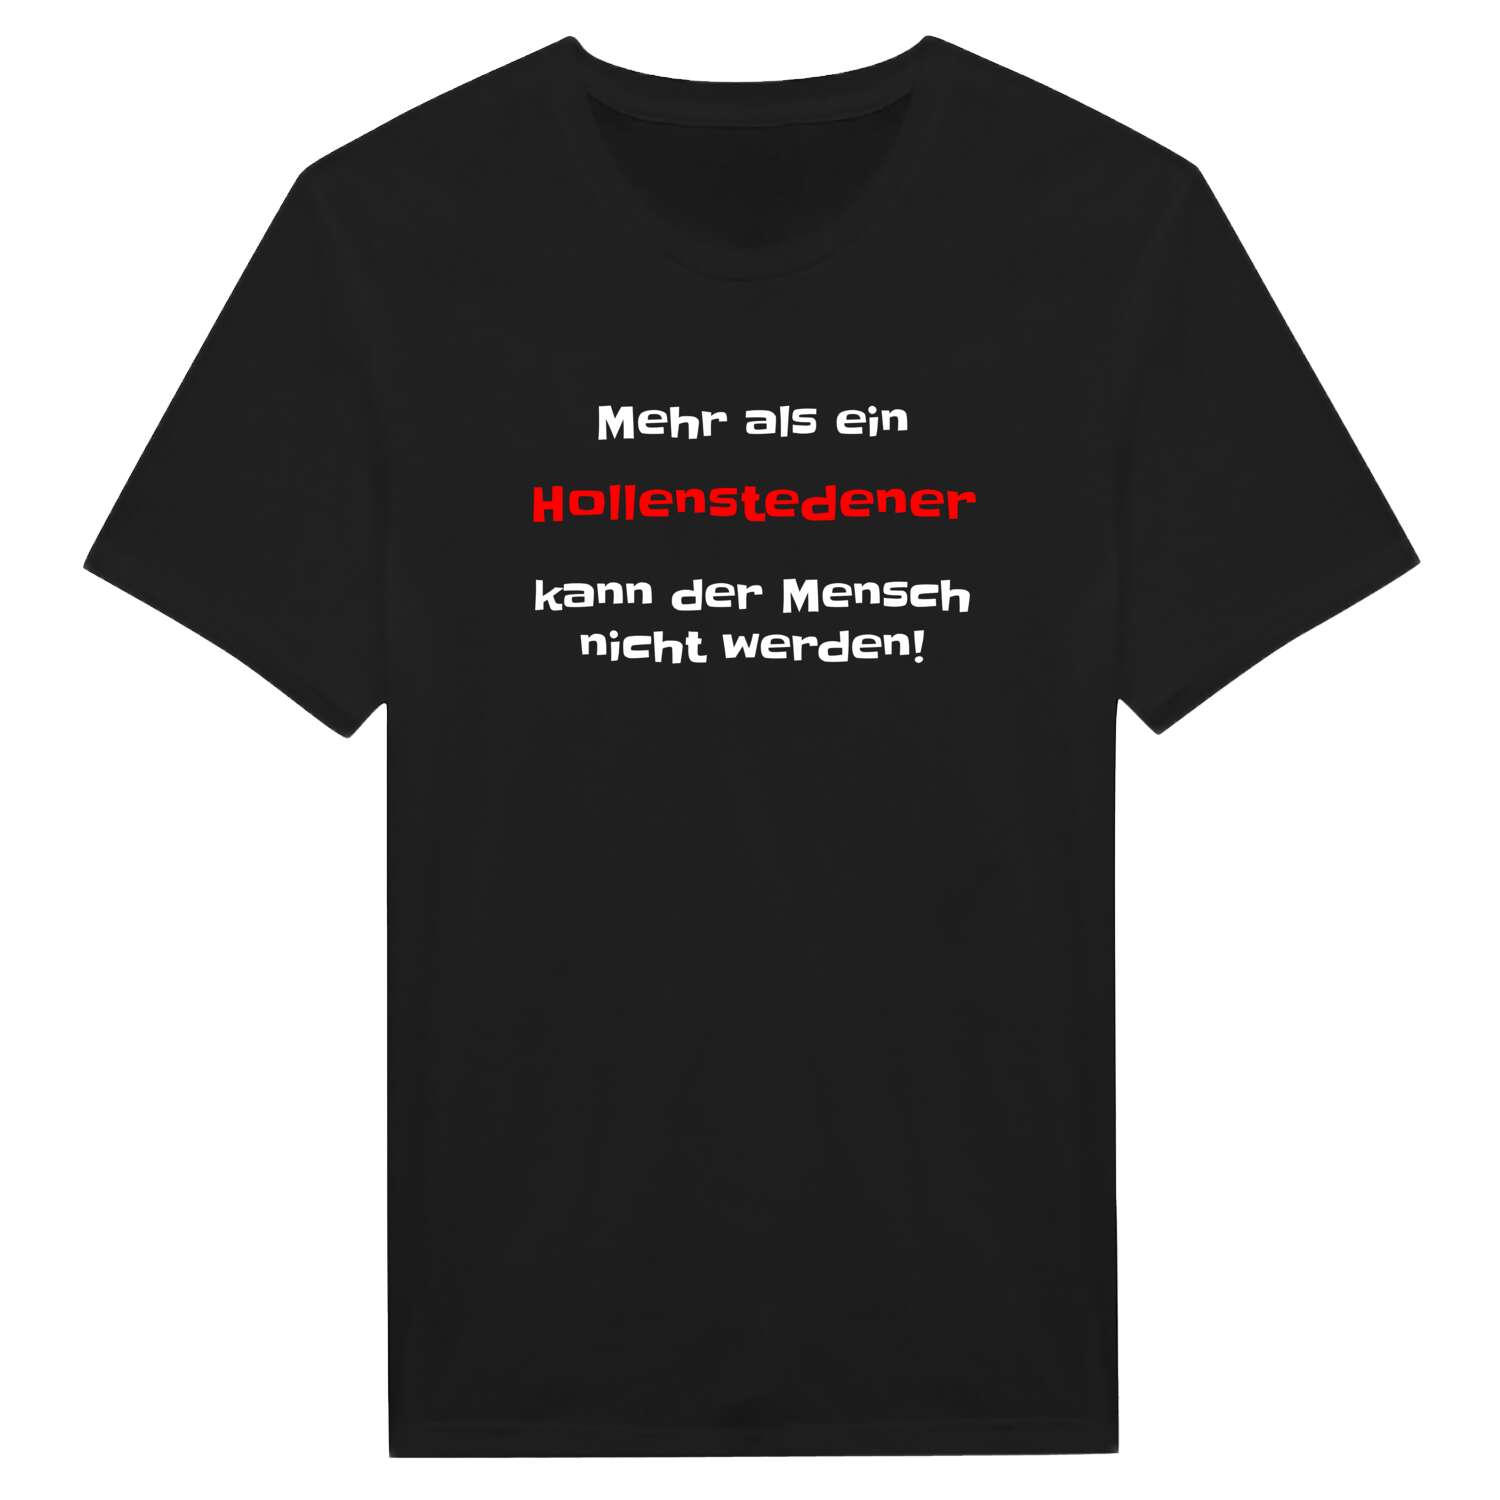 Hollenstede T-Shirt »Mehr als ein«